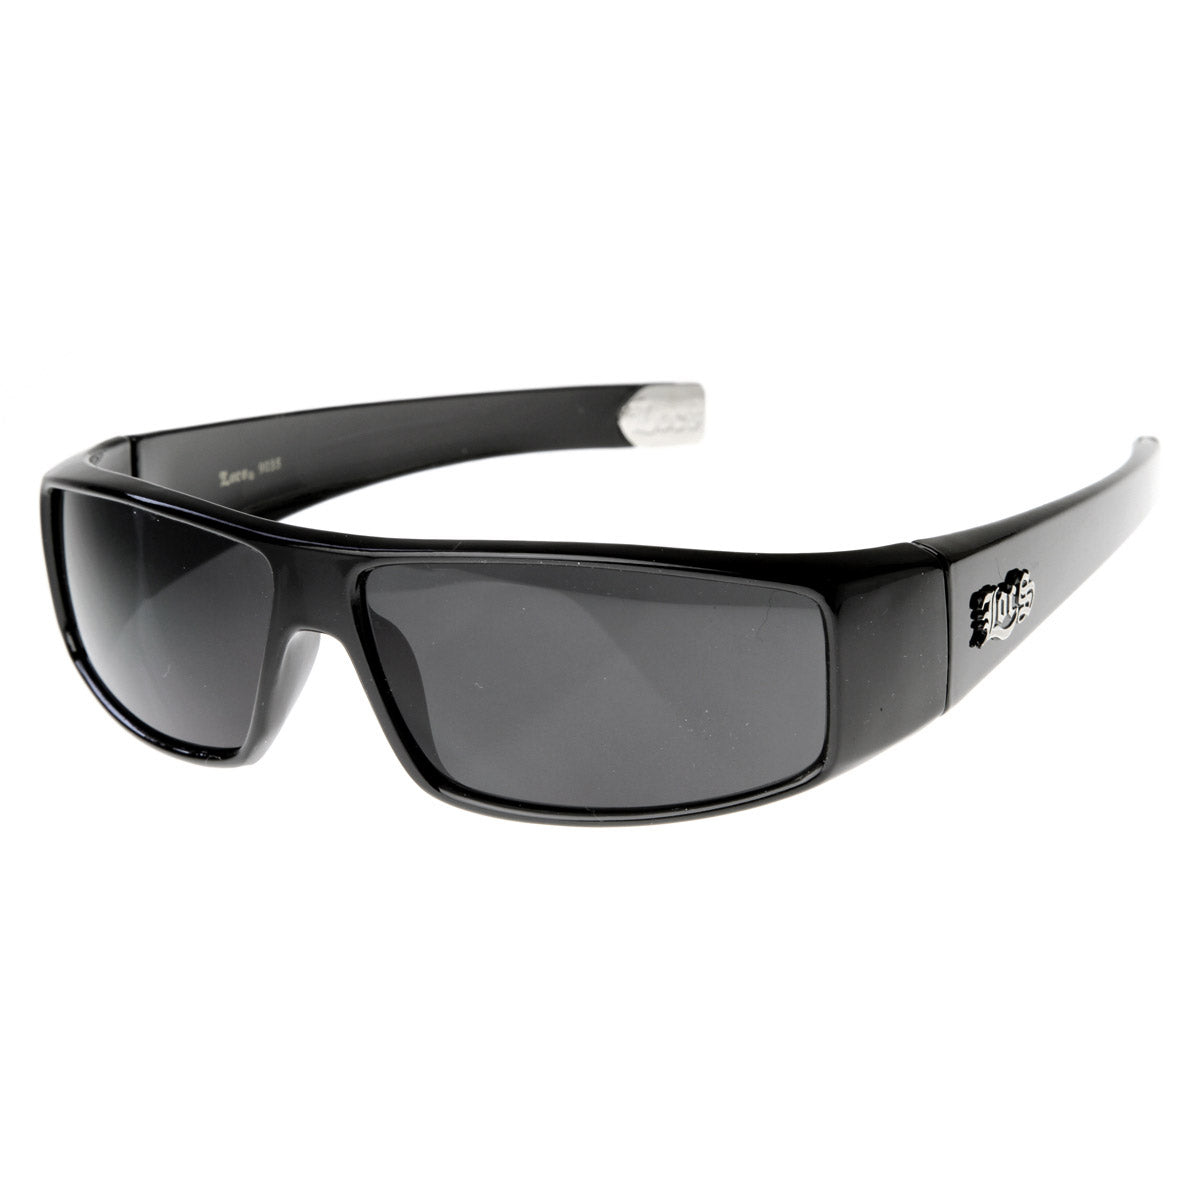 Black Locs Wrap Around Sunglasses - For Men - Locs